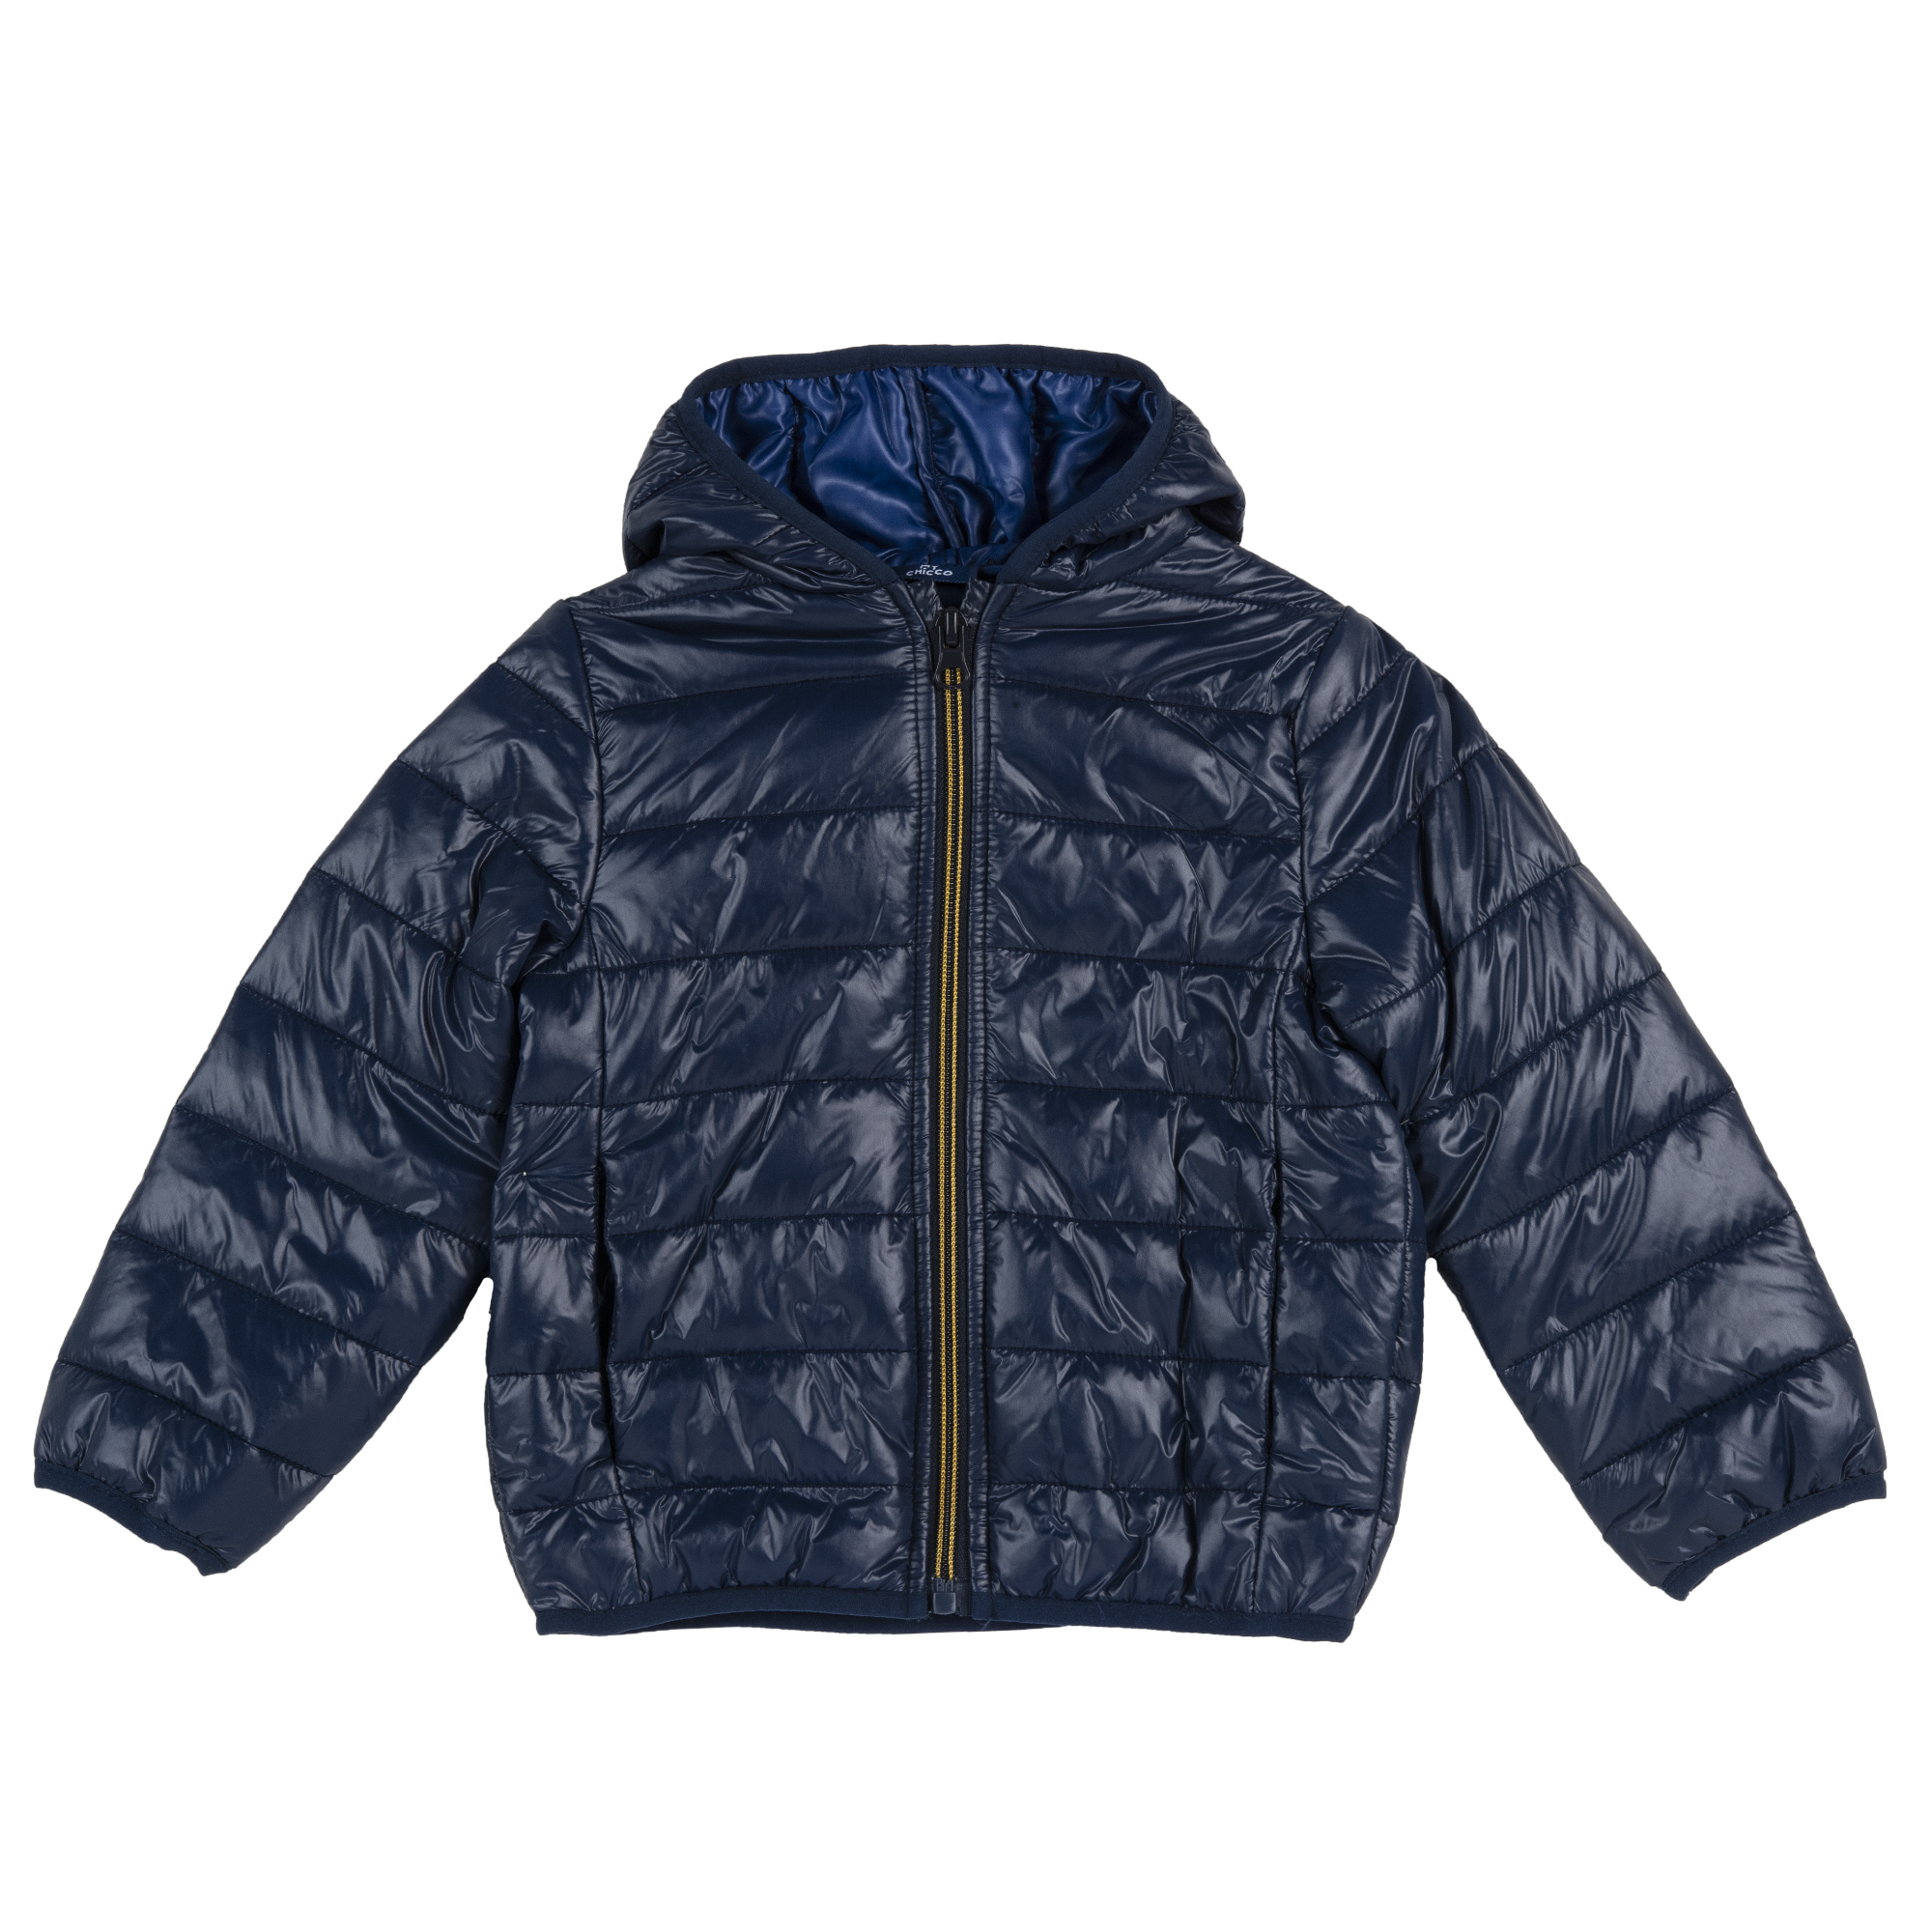 Jacheta copii matlasata Chicco, gluga, albastru inchis, 87559, 62